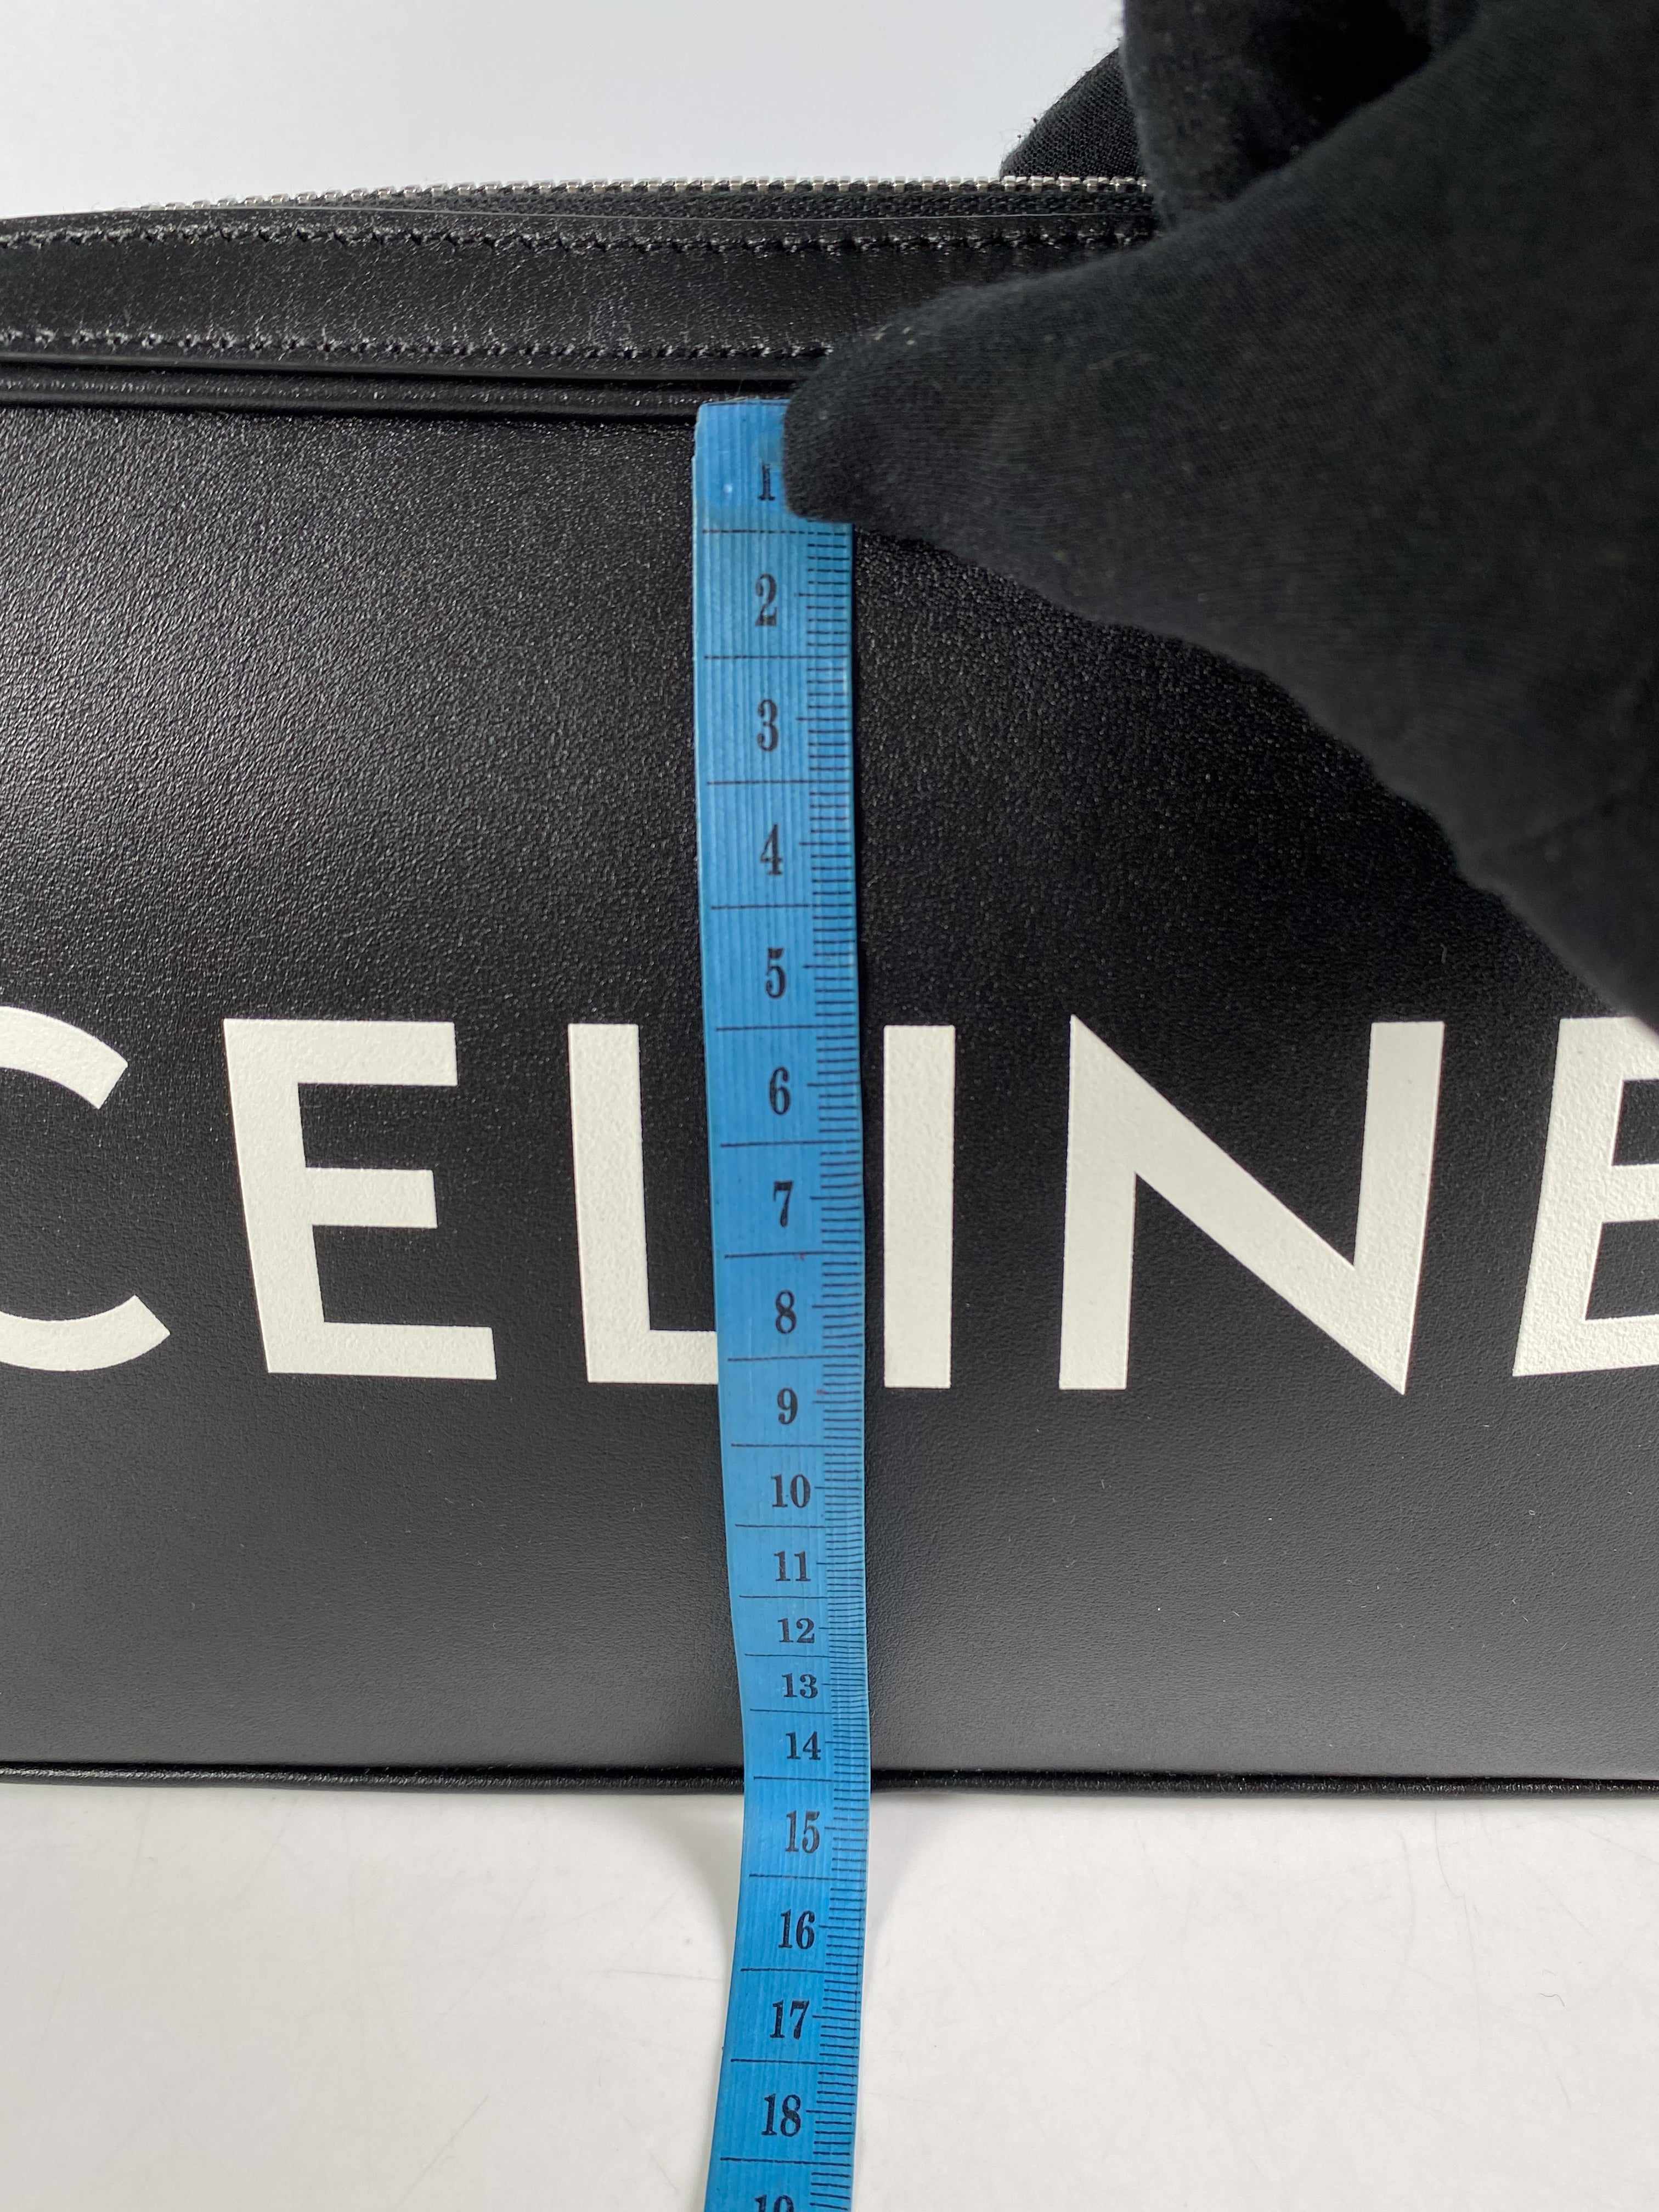 Celine Black Calfskin Logo Messenger Bag Unisex